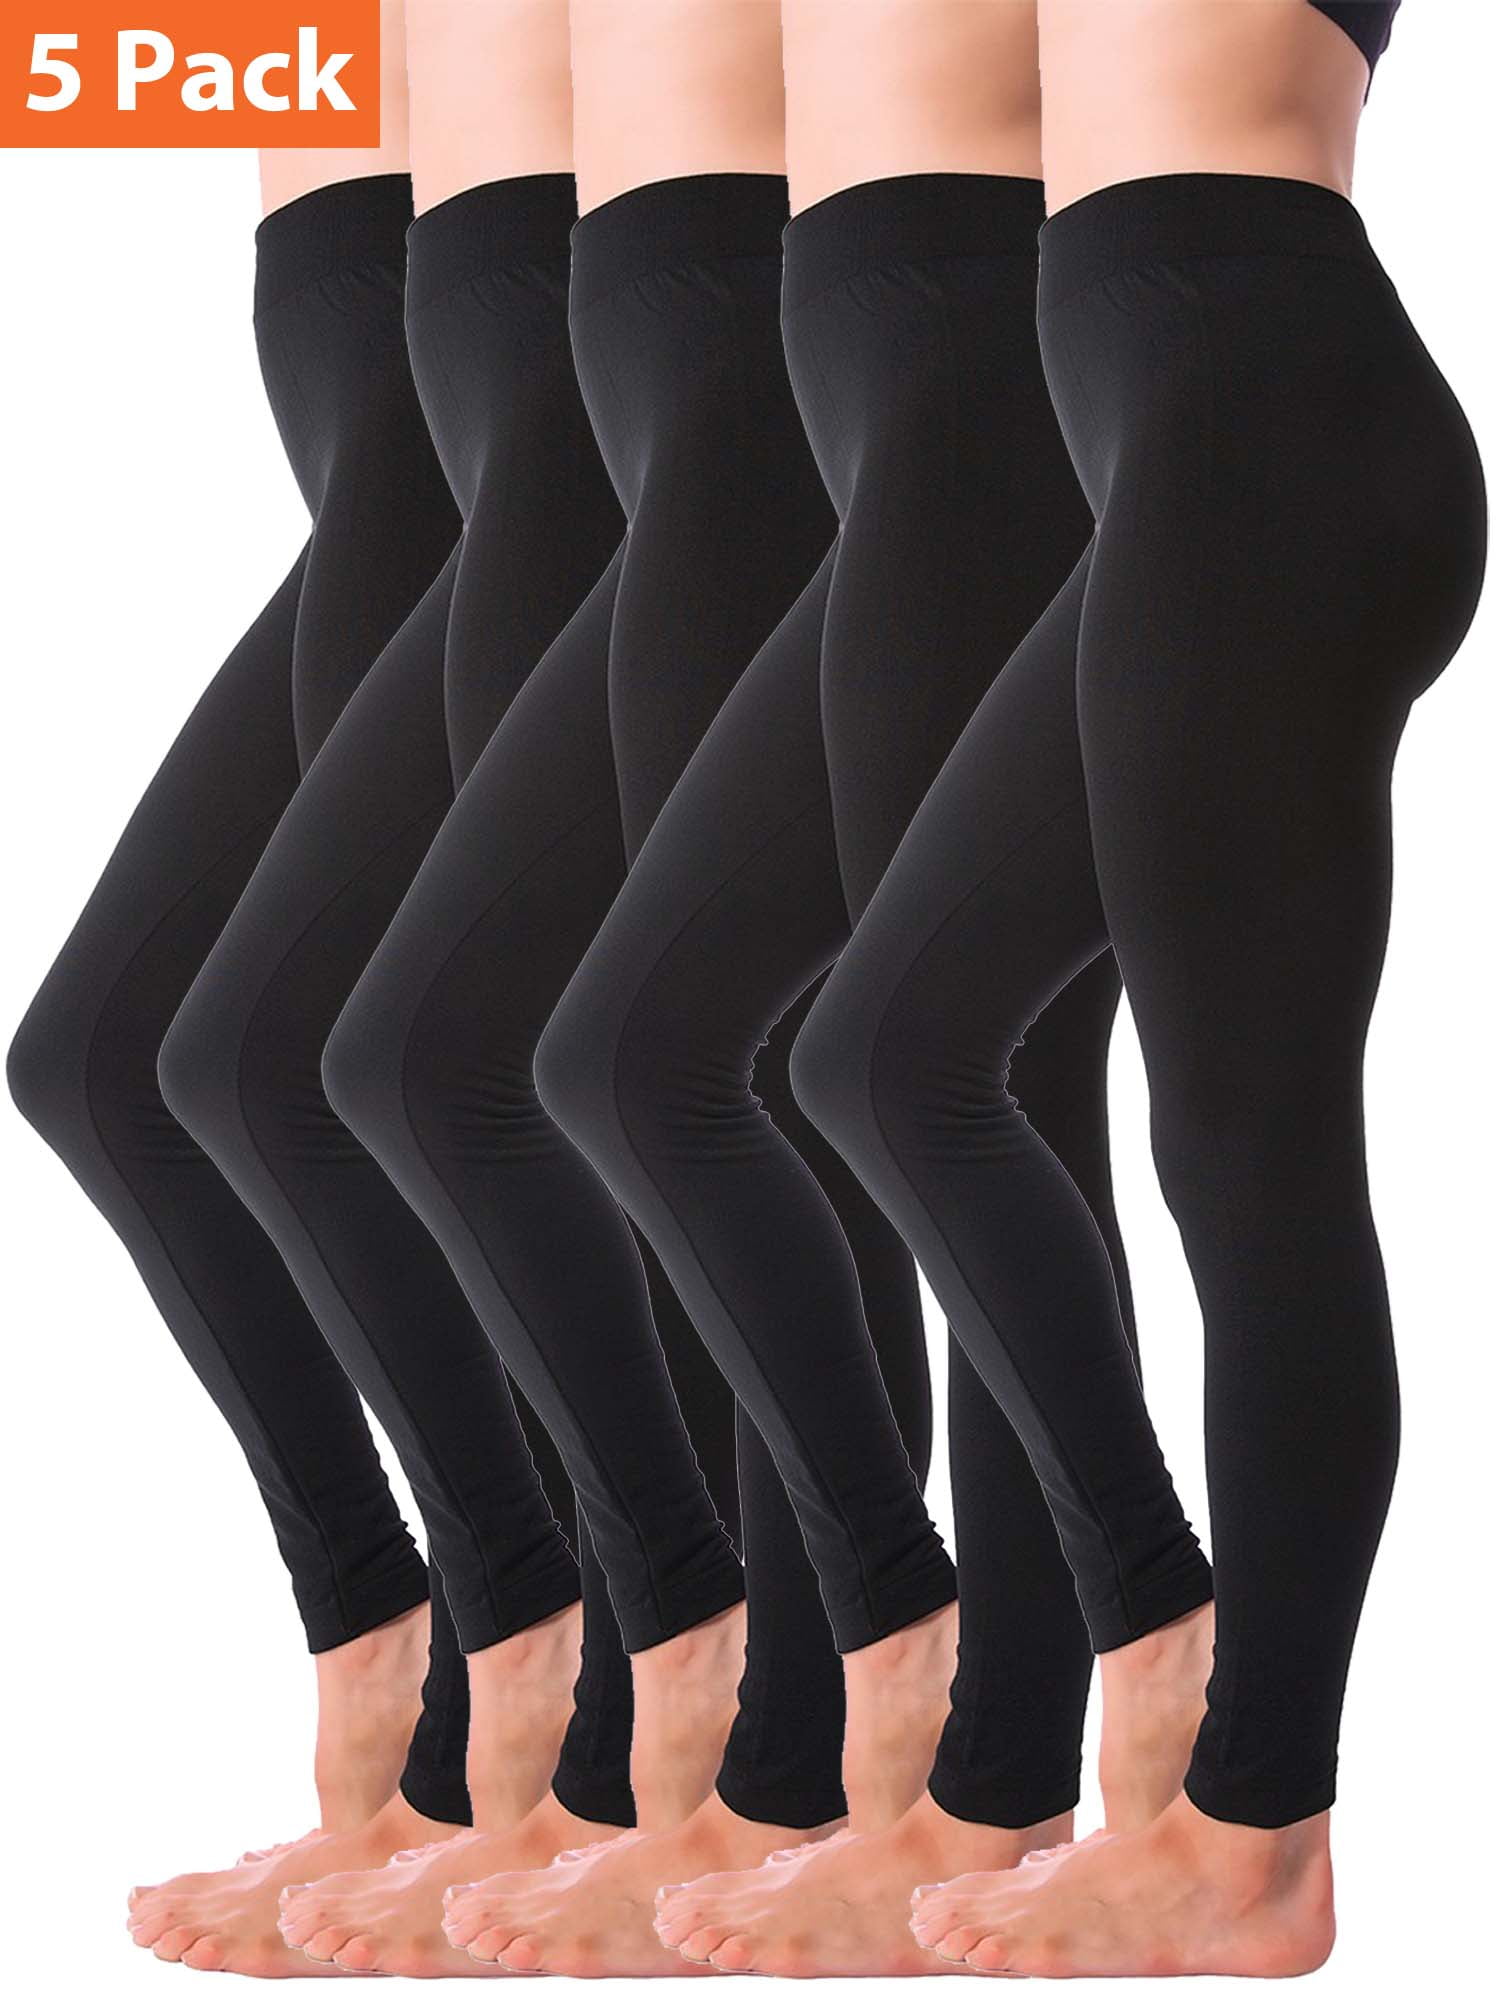 Winter Leggings for Women, Women's Full Length Fleece Lined